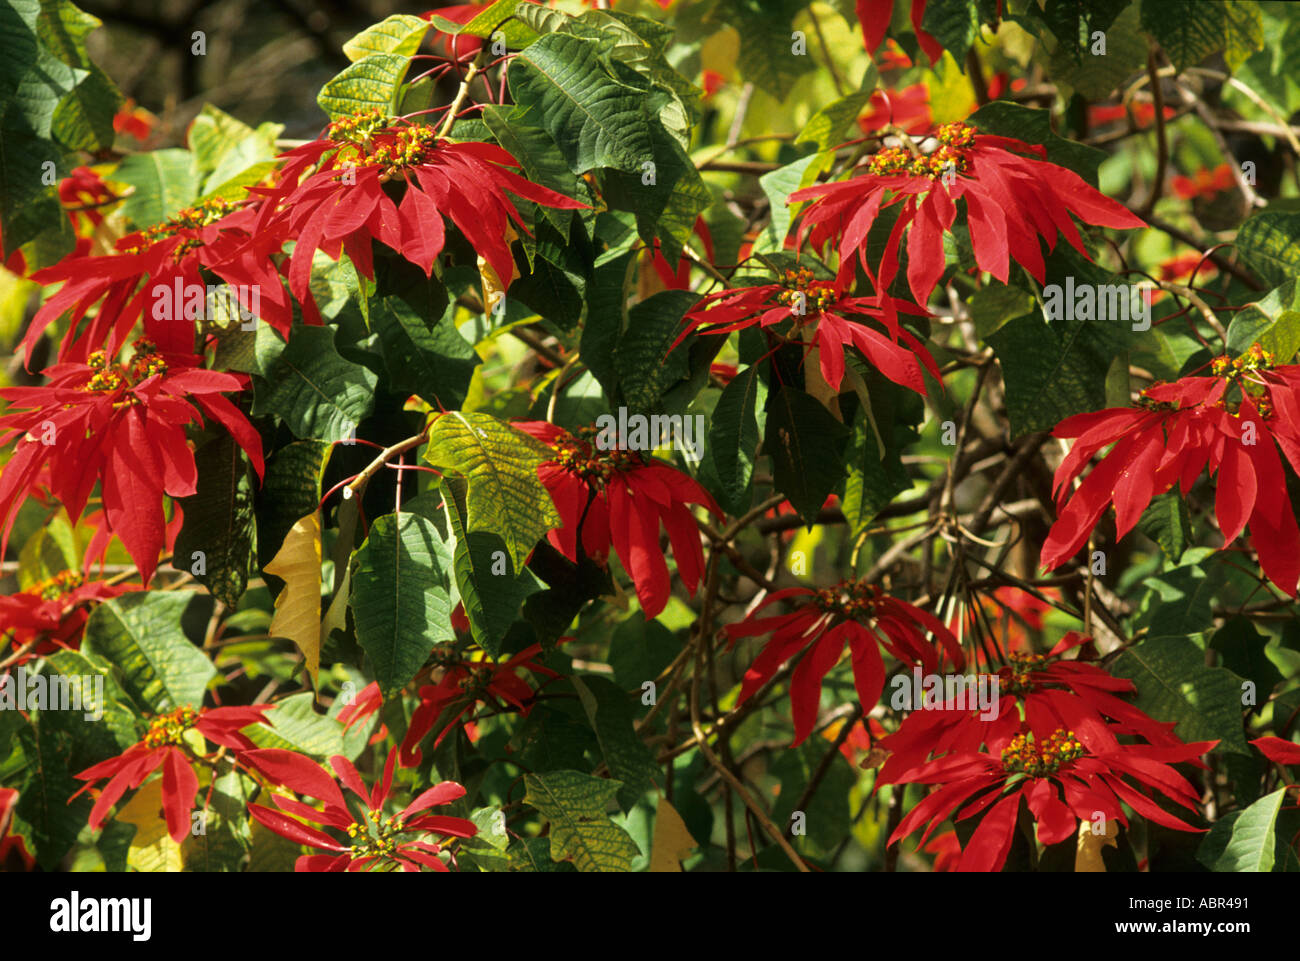 Amazonie, Brésil. L'Étoile de Noël (Poinsettia) plante qui pousse à l'état sauvage ; fleurs rouge vif sur bush. Banque D'Images